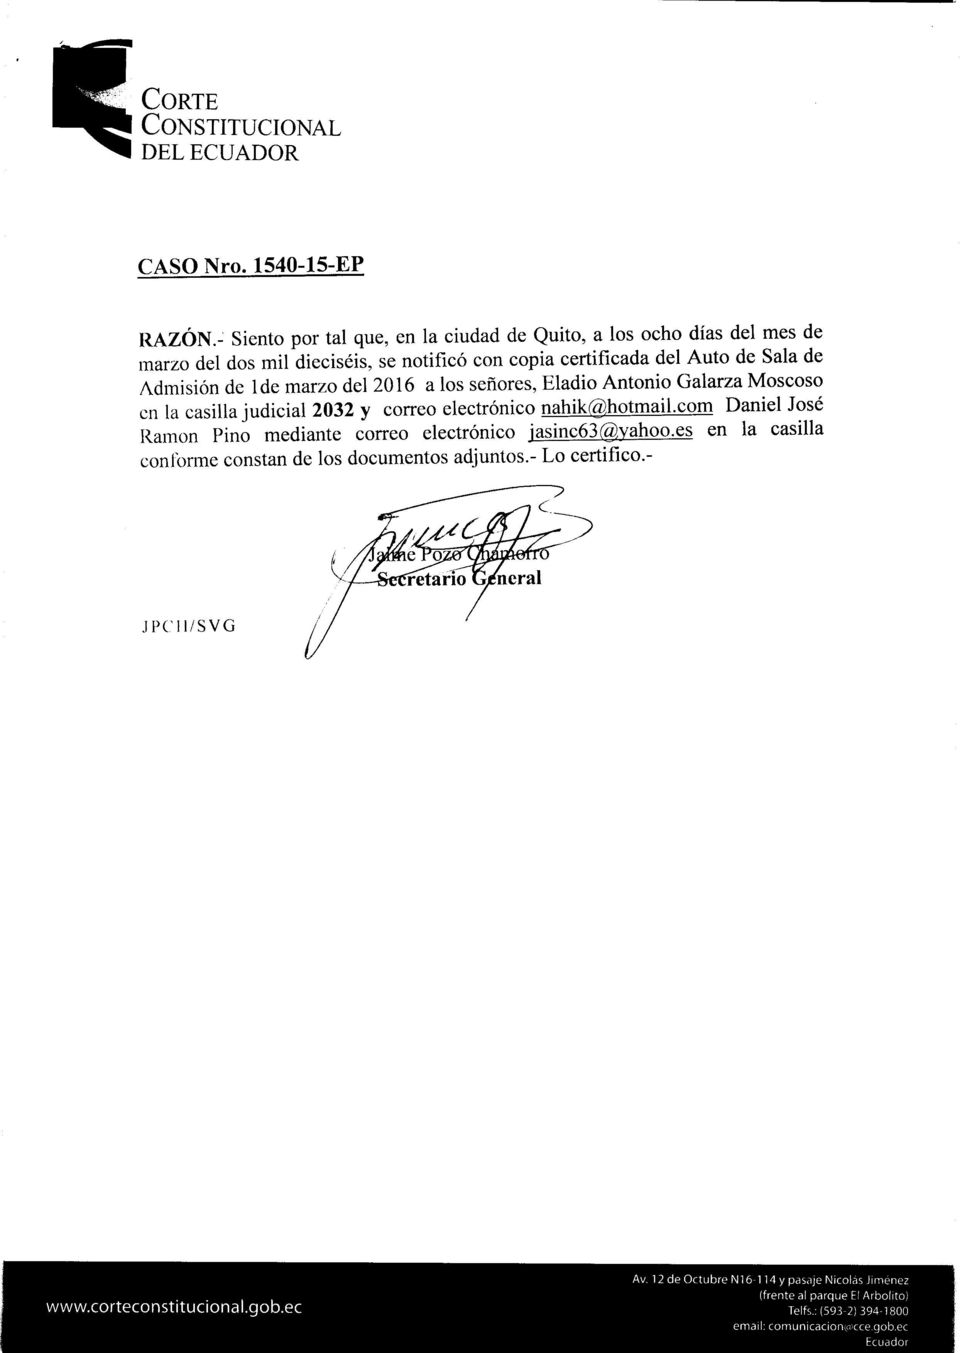 Admisión de lde marzo del a los señores, Eladio Antonio Galarza Moscoso en la casilla judicial 2032 y rorreo electrónico nahik@hotmail.